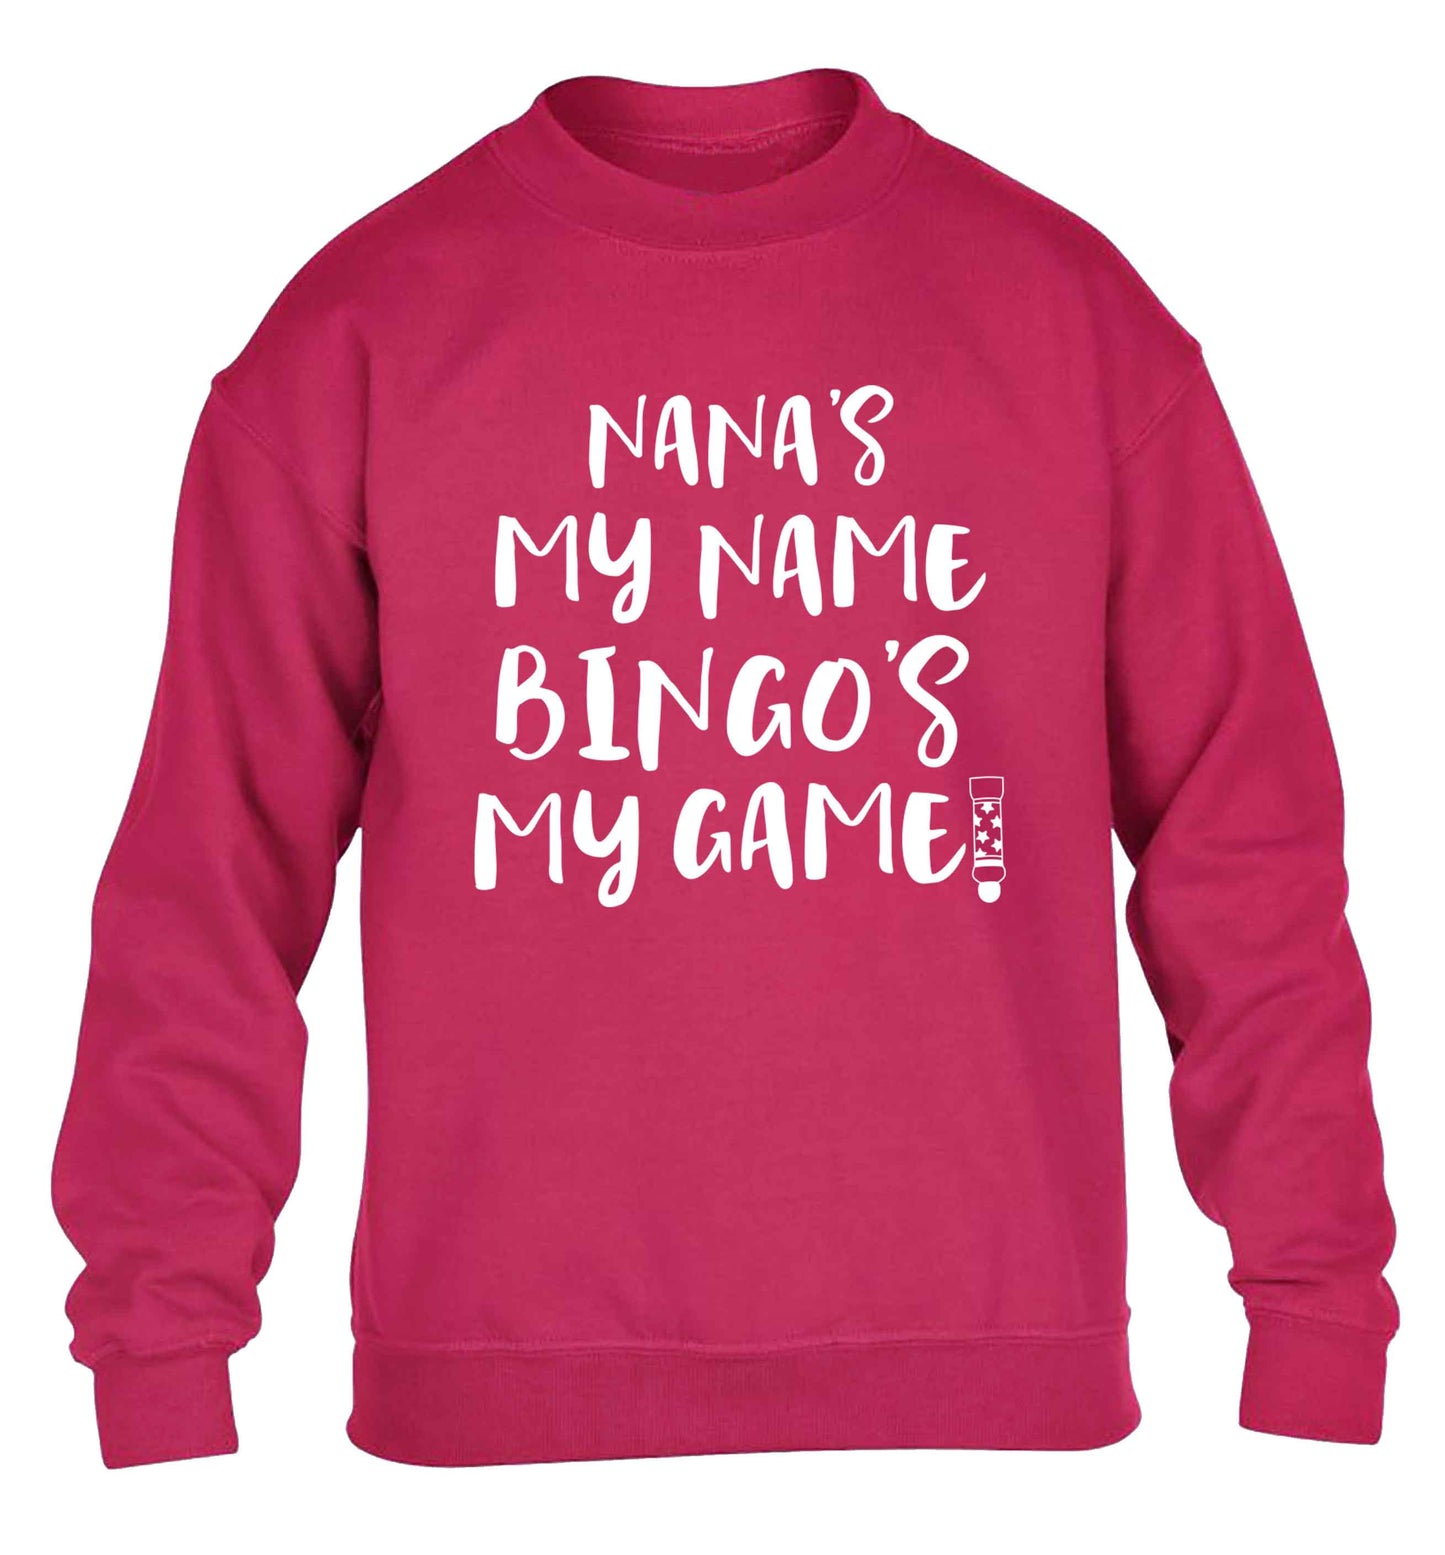 Nana's my name bingo's my game! children's pink sweater 12-13 Years